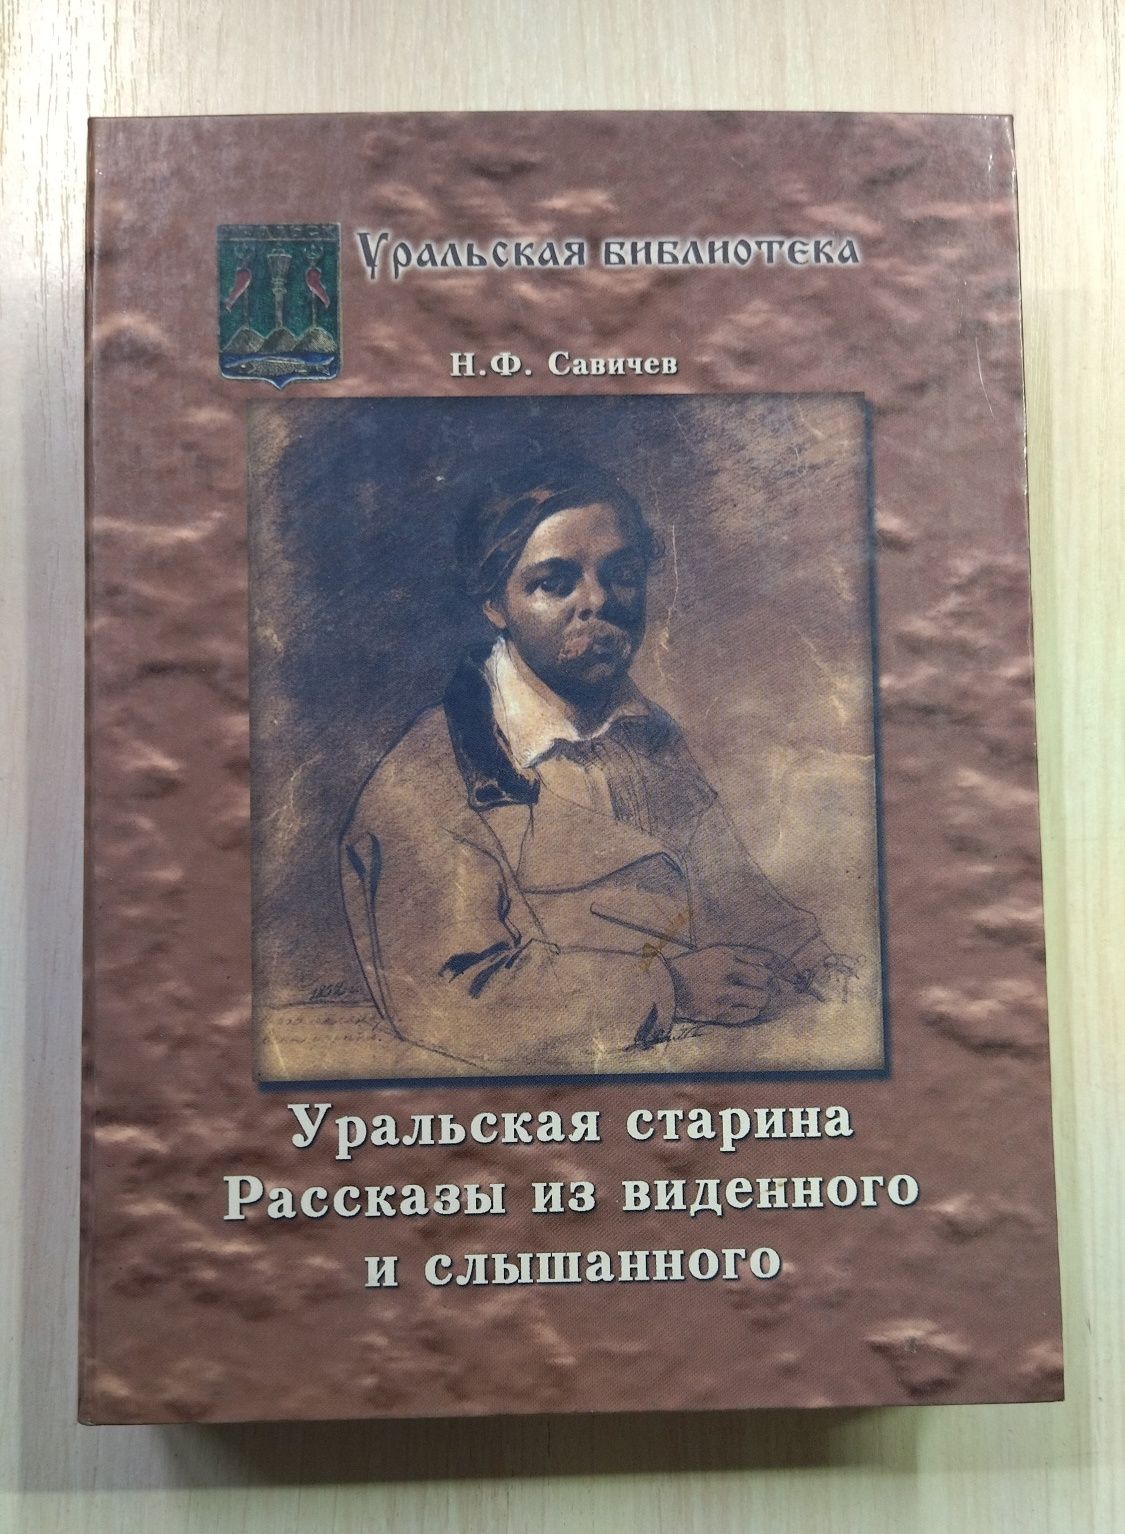 Продам книги из серии Уральская библиотека.